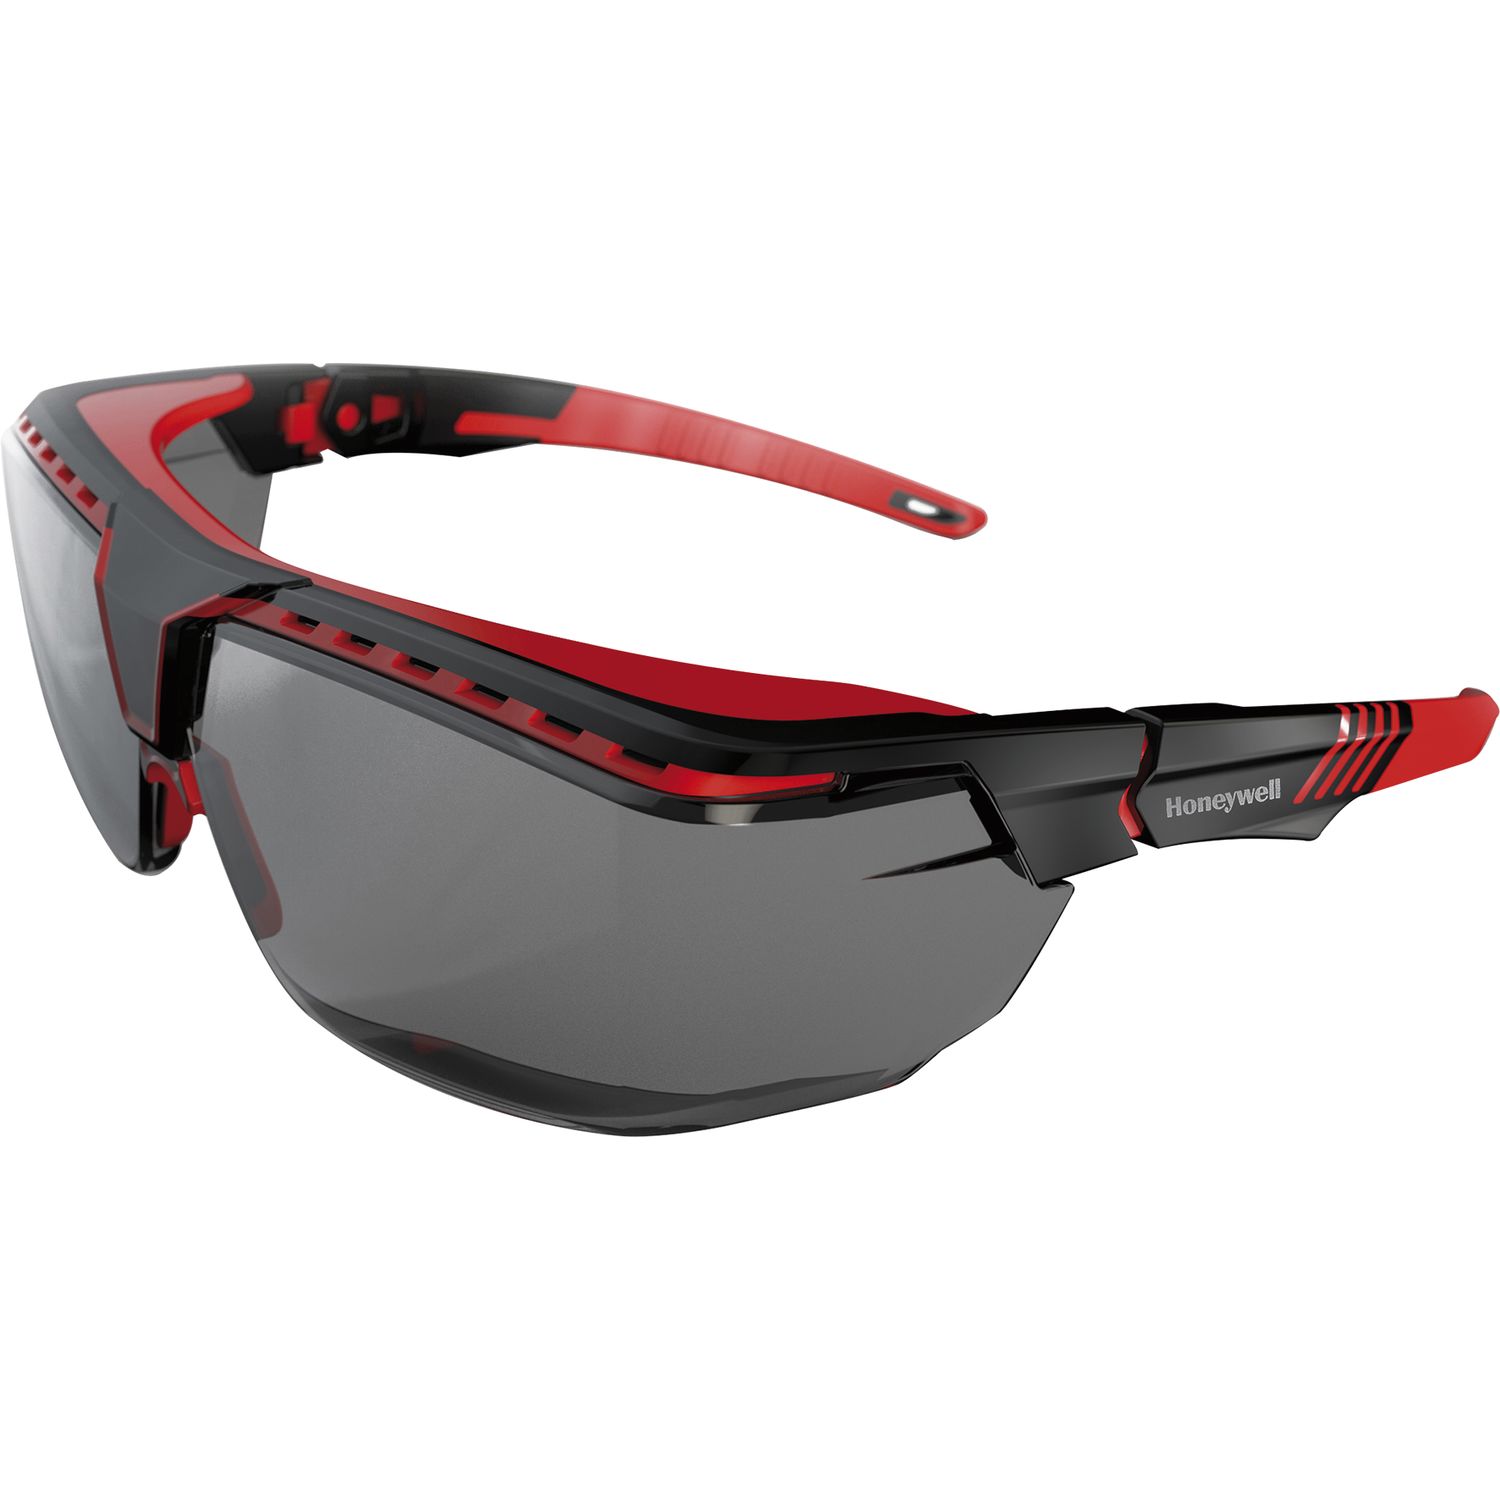 HONEYWELL Schutzbrille Avatar OTG graue Sichtscheibe Rahmen schwarz/rot